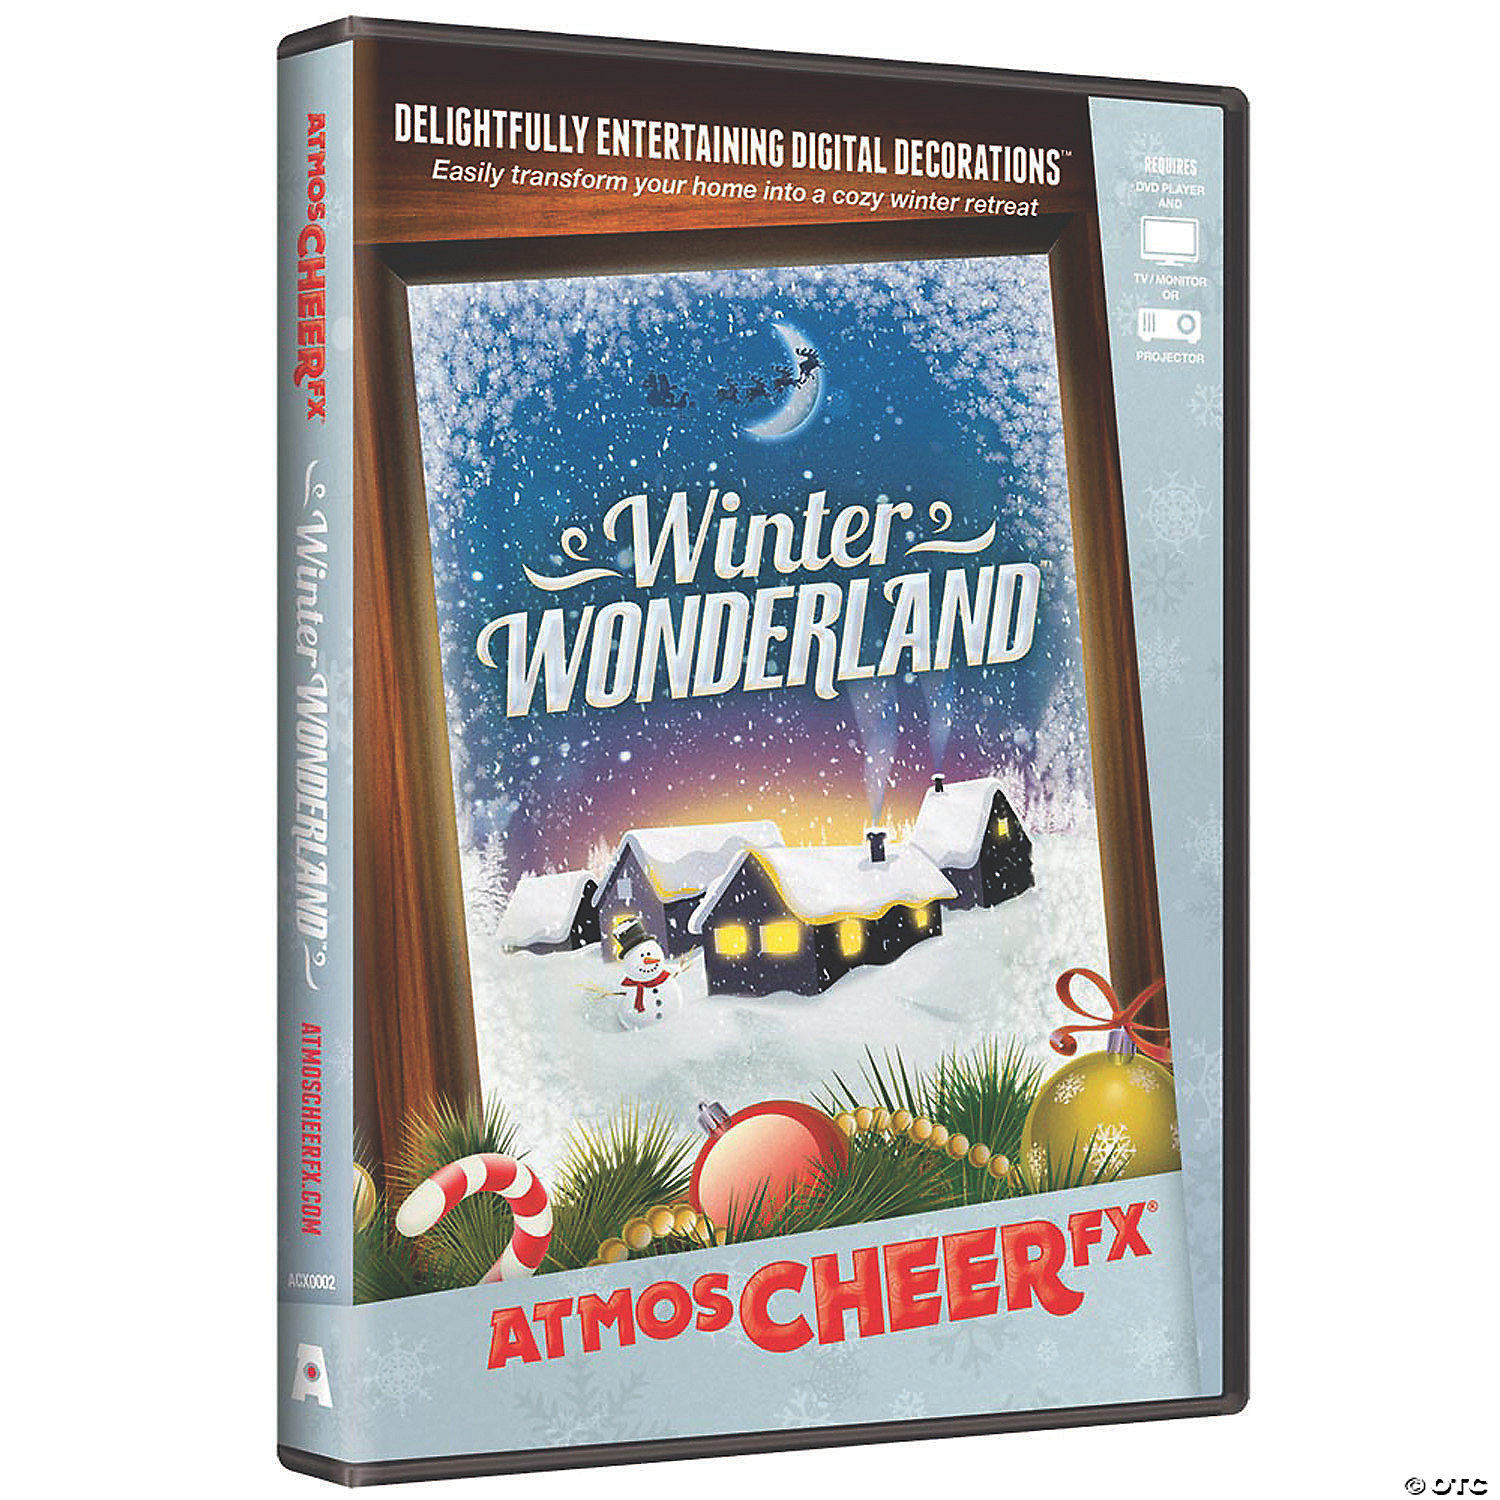 ATMOSCHEERFX WINTER WONDERLAND - CHRISTMAS